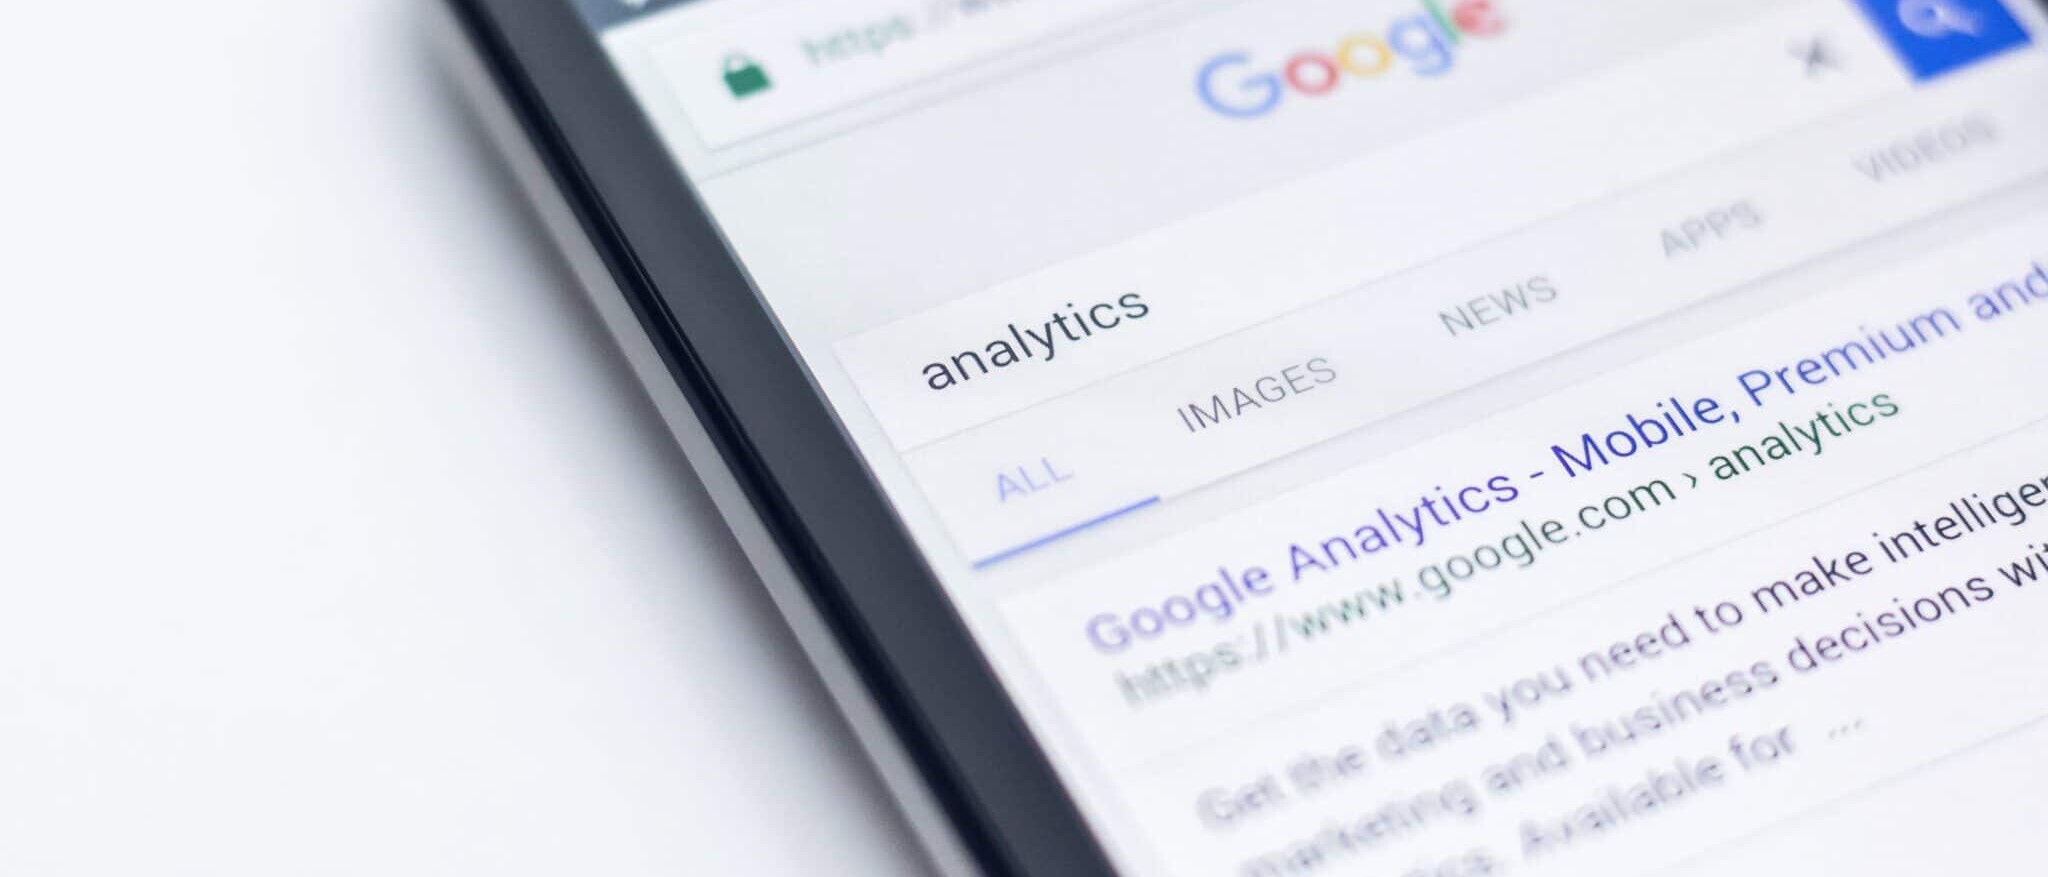 Hoe werkt Google Analytics 4